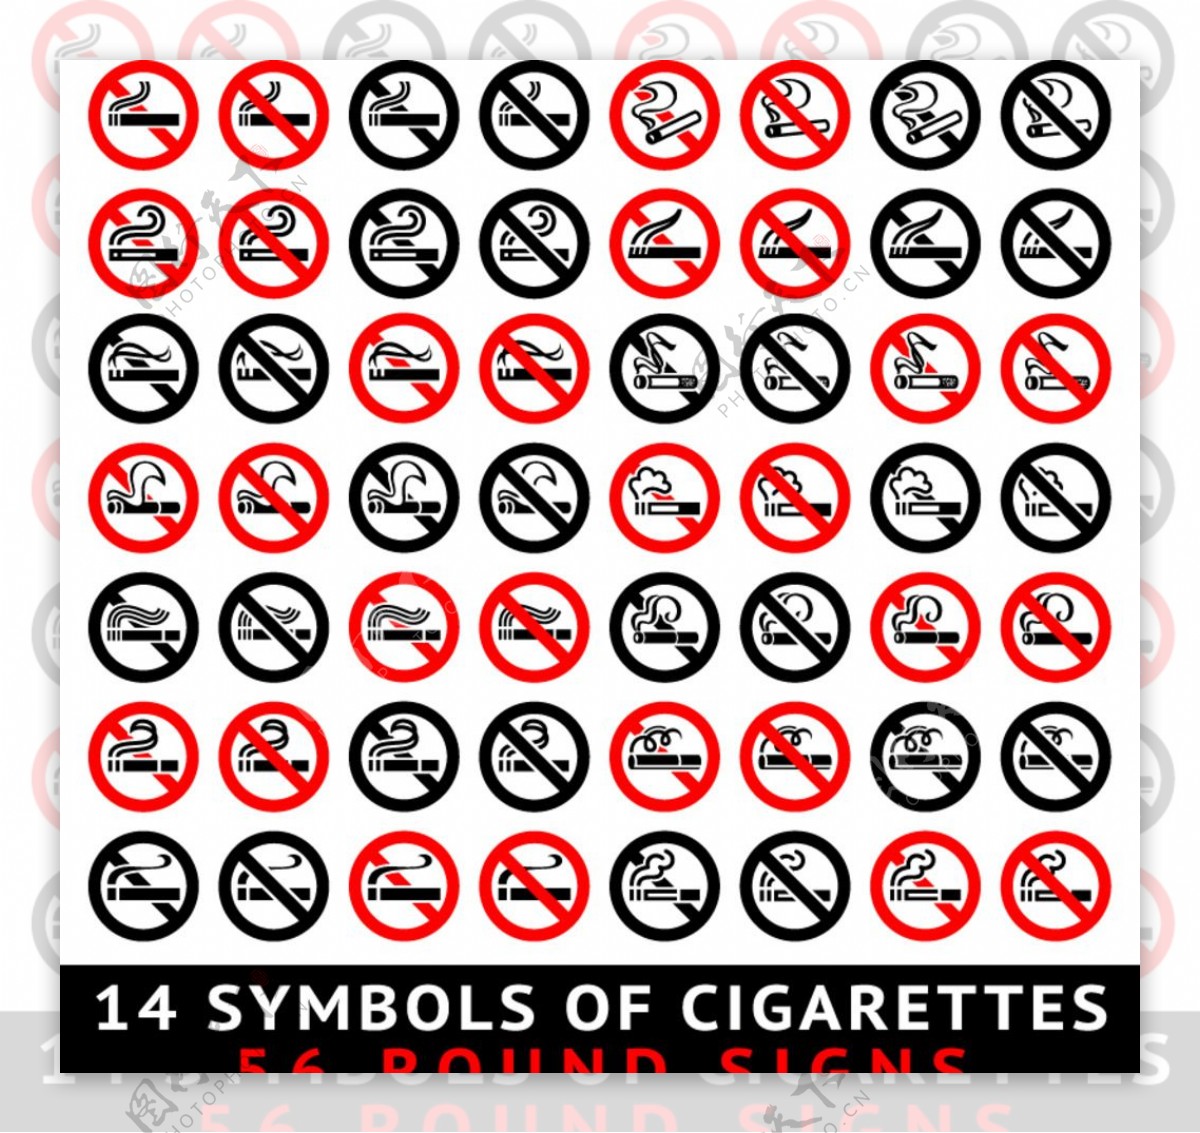 56款禁烟标贴设计矢量图片